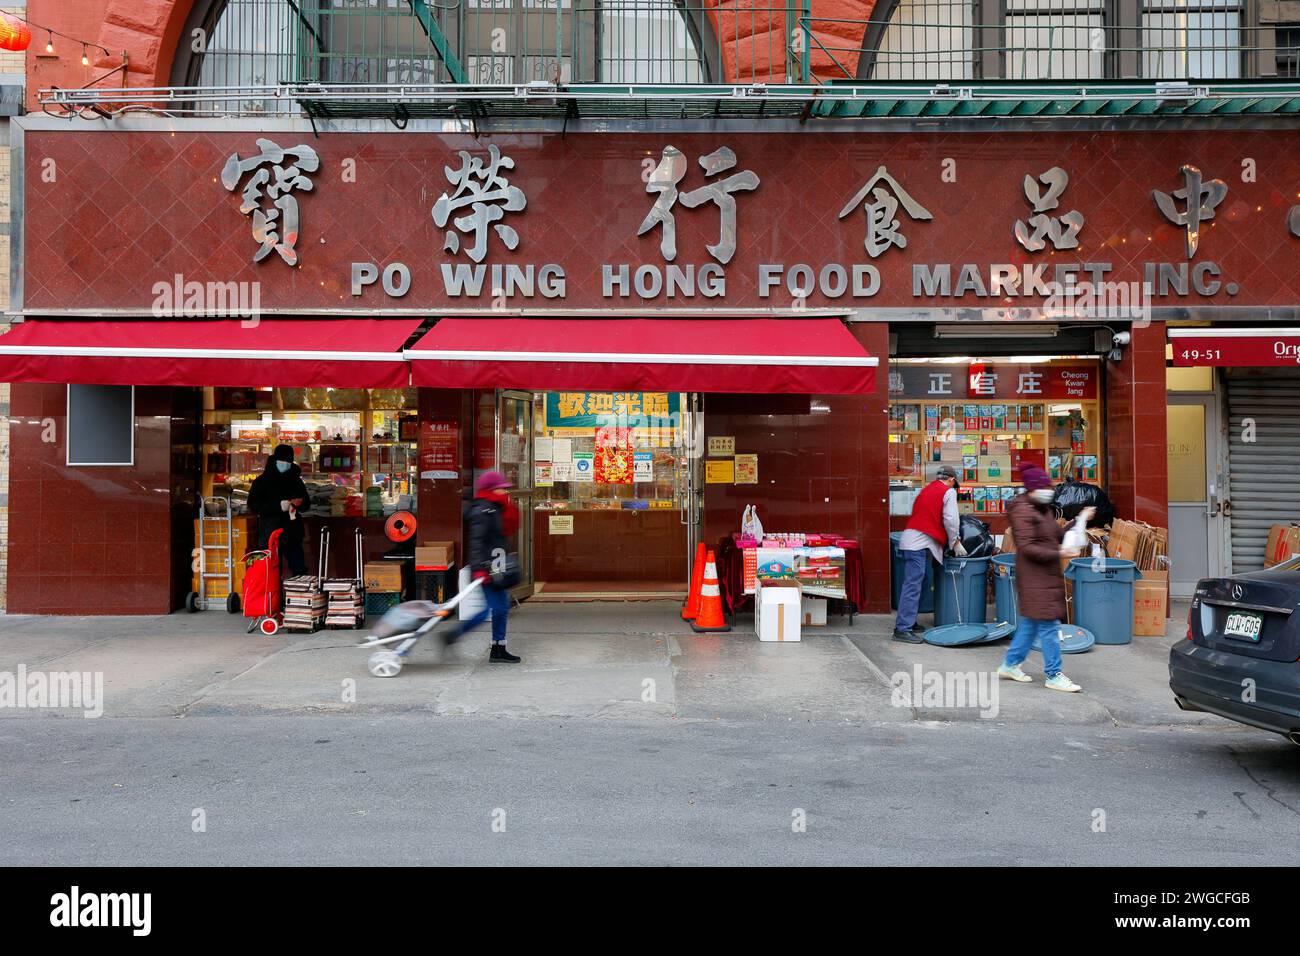 Po Wing Hong Food Market 寶榮行食品中心, 49-51 Elizabeth St, New York, NYC, Ladenlokal eines chinesischen Lebensmittelgeschäfts und Suppenzutaten in Manhattan Chinatown. Stockfoto